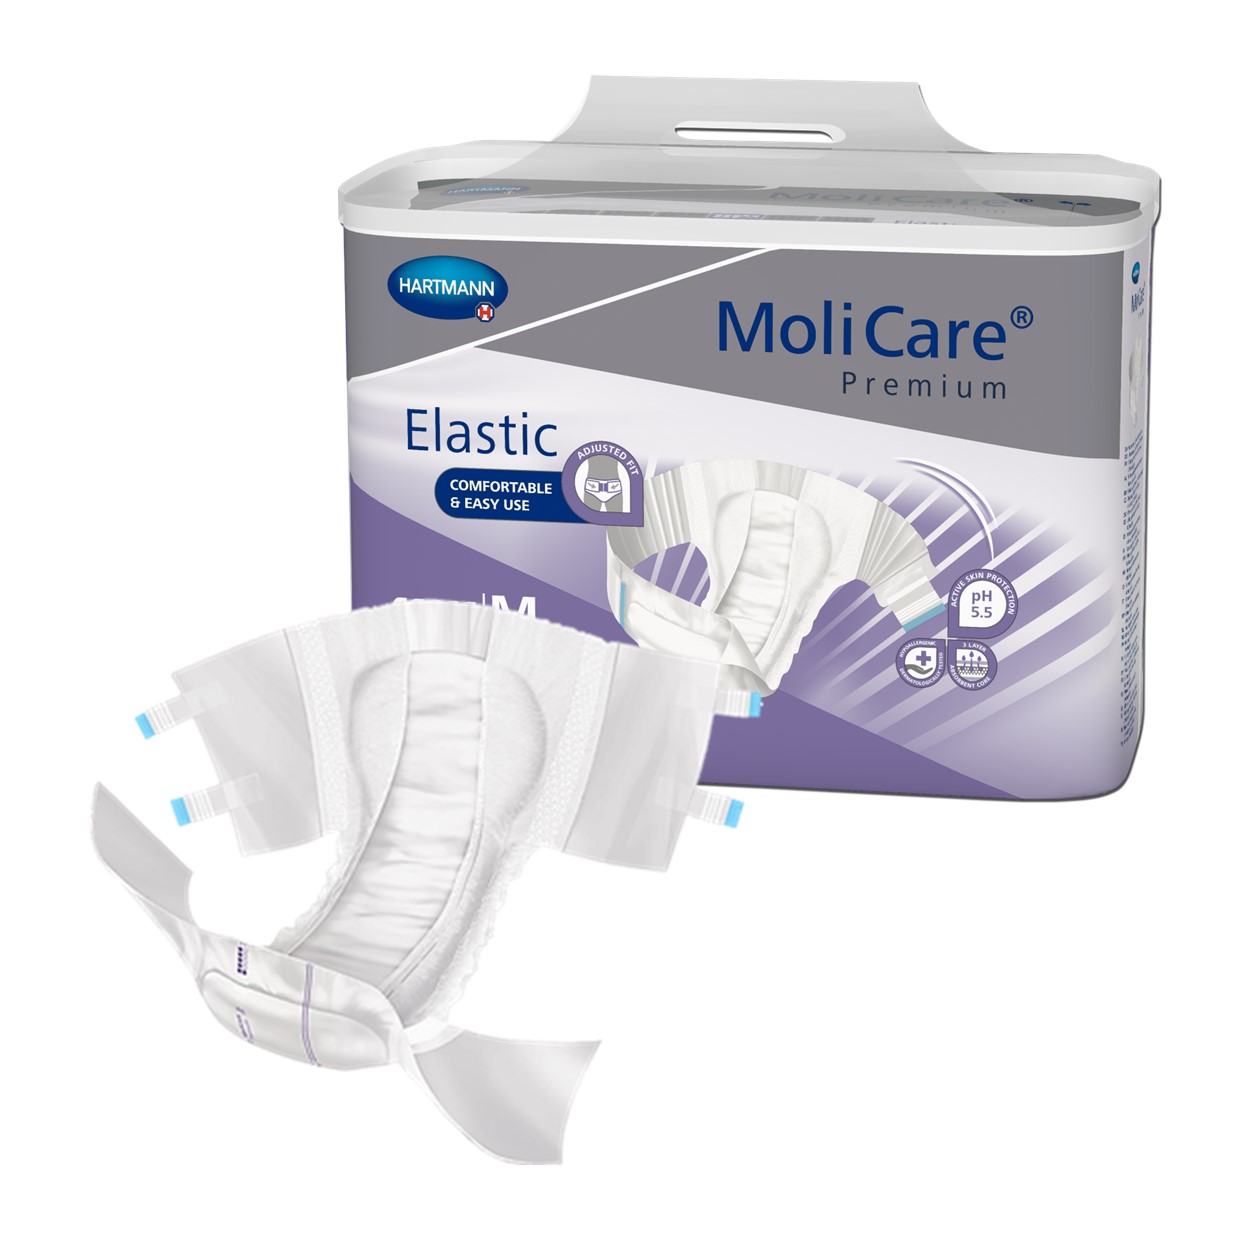 MoliCare Premium Elastic - RainTree Medical